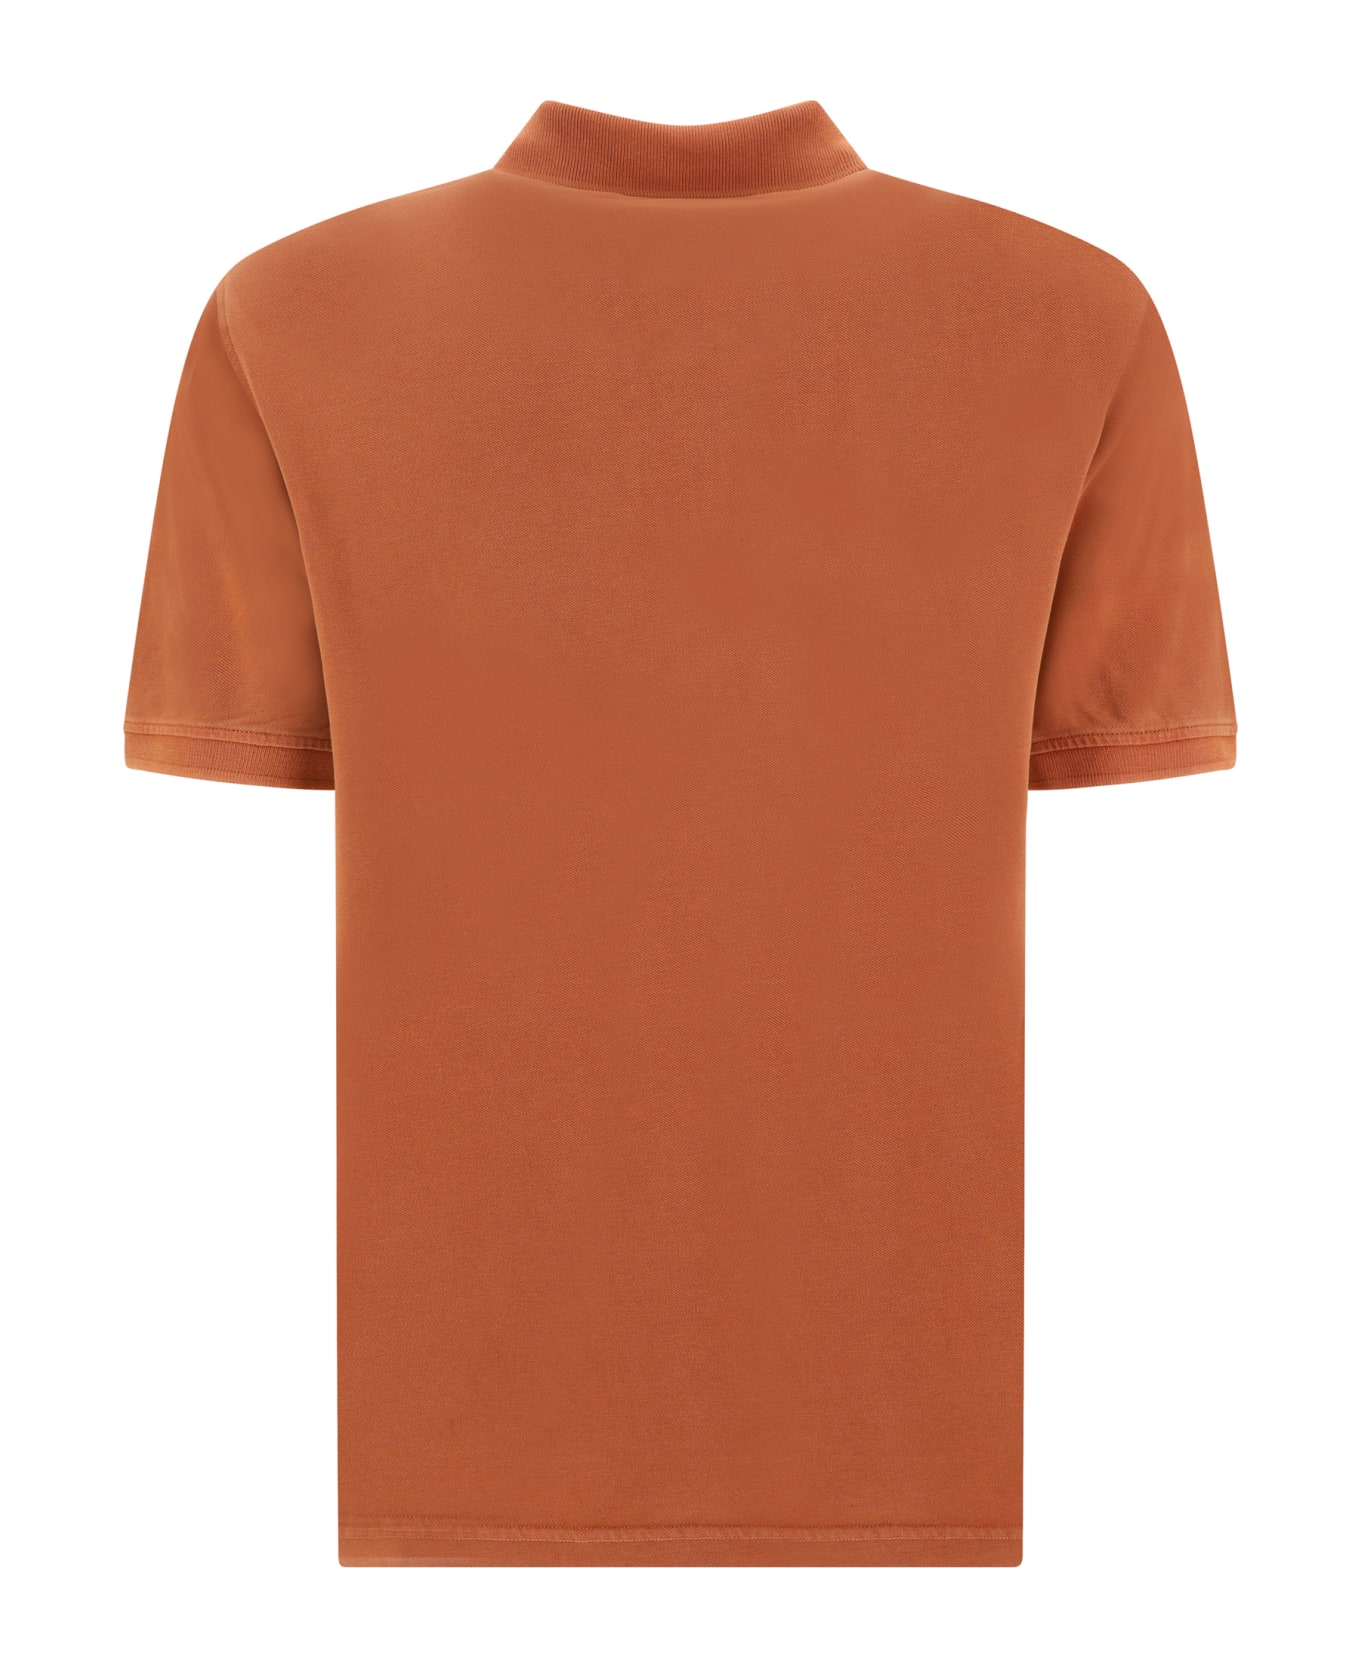 Herno Polo Shirt - Yellow & Orange